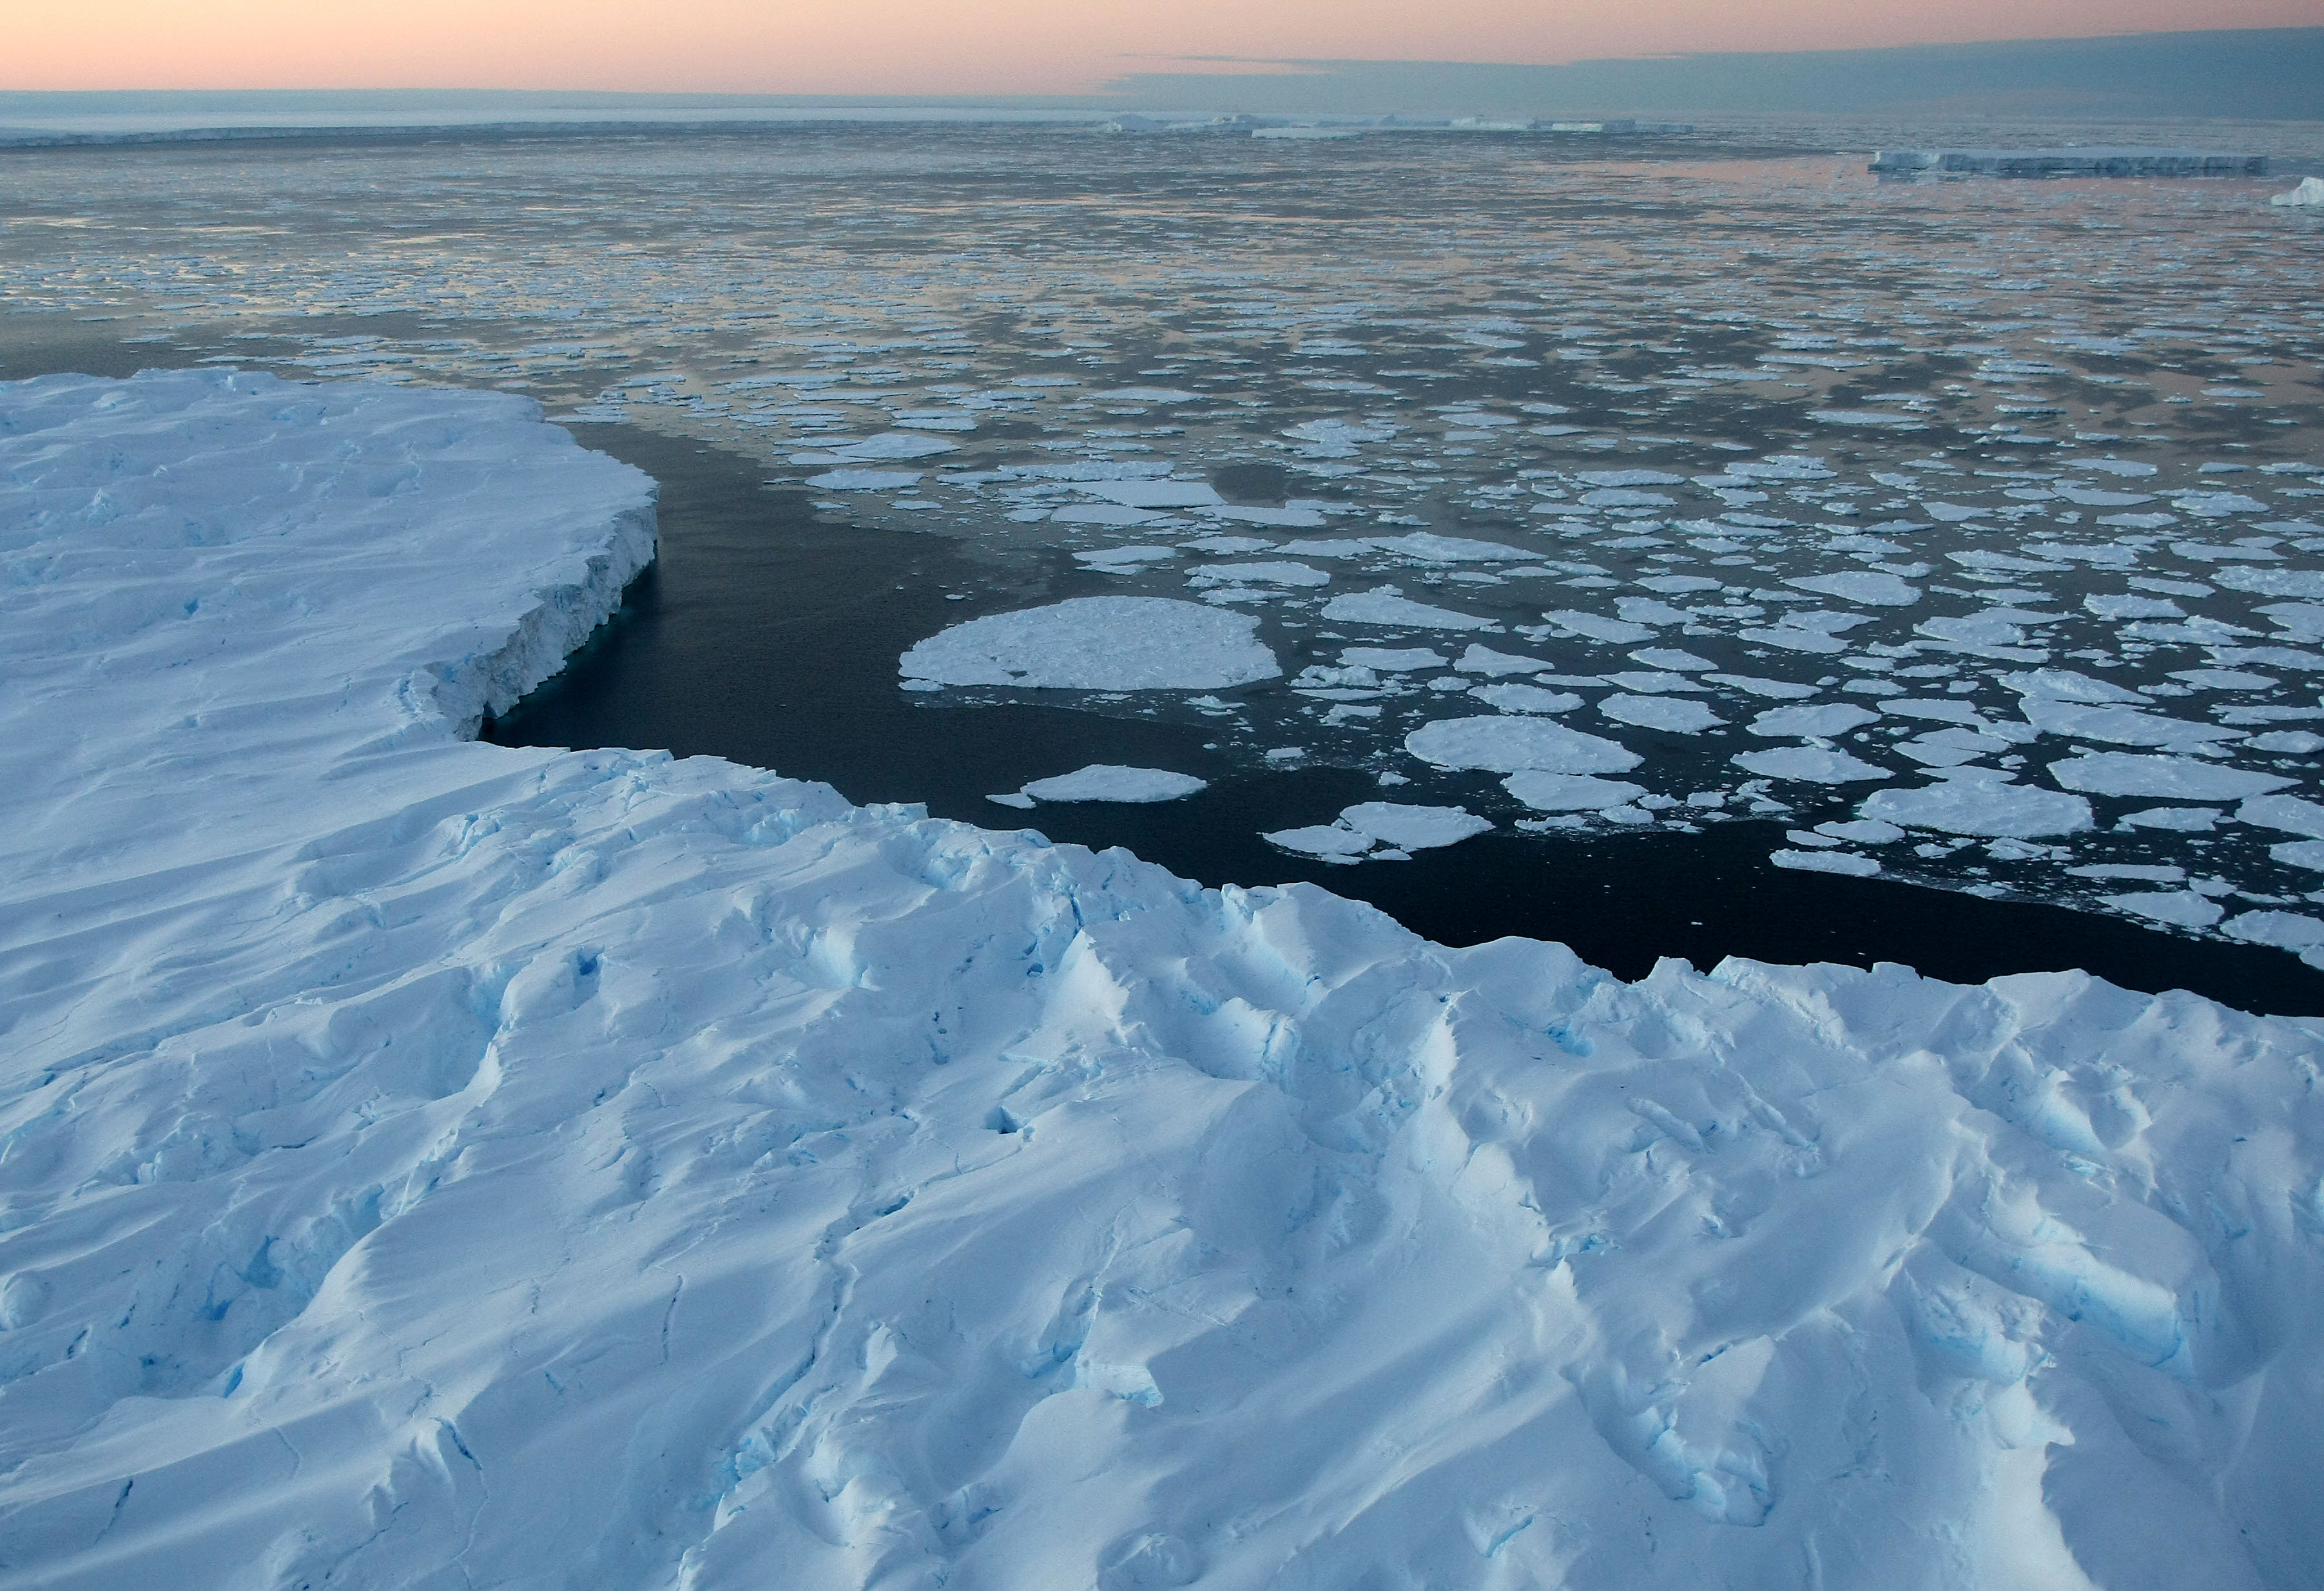 Teljesen átírta a nyugat-antarktiszi jégtakaró történetét a friss kutatás, ami rávilágít, miért kell 2 fok alatt tartani a felmelegedést